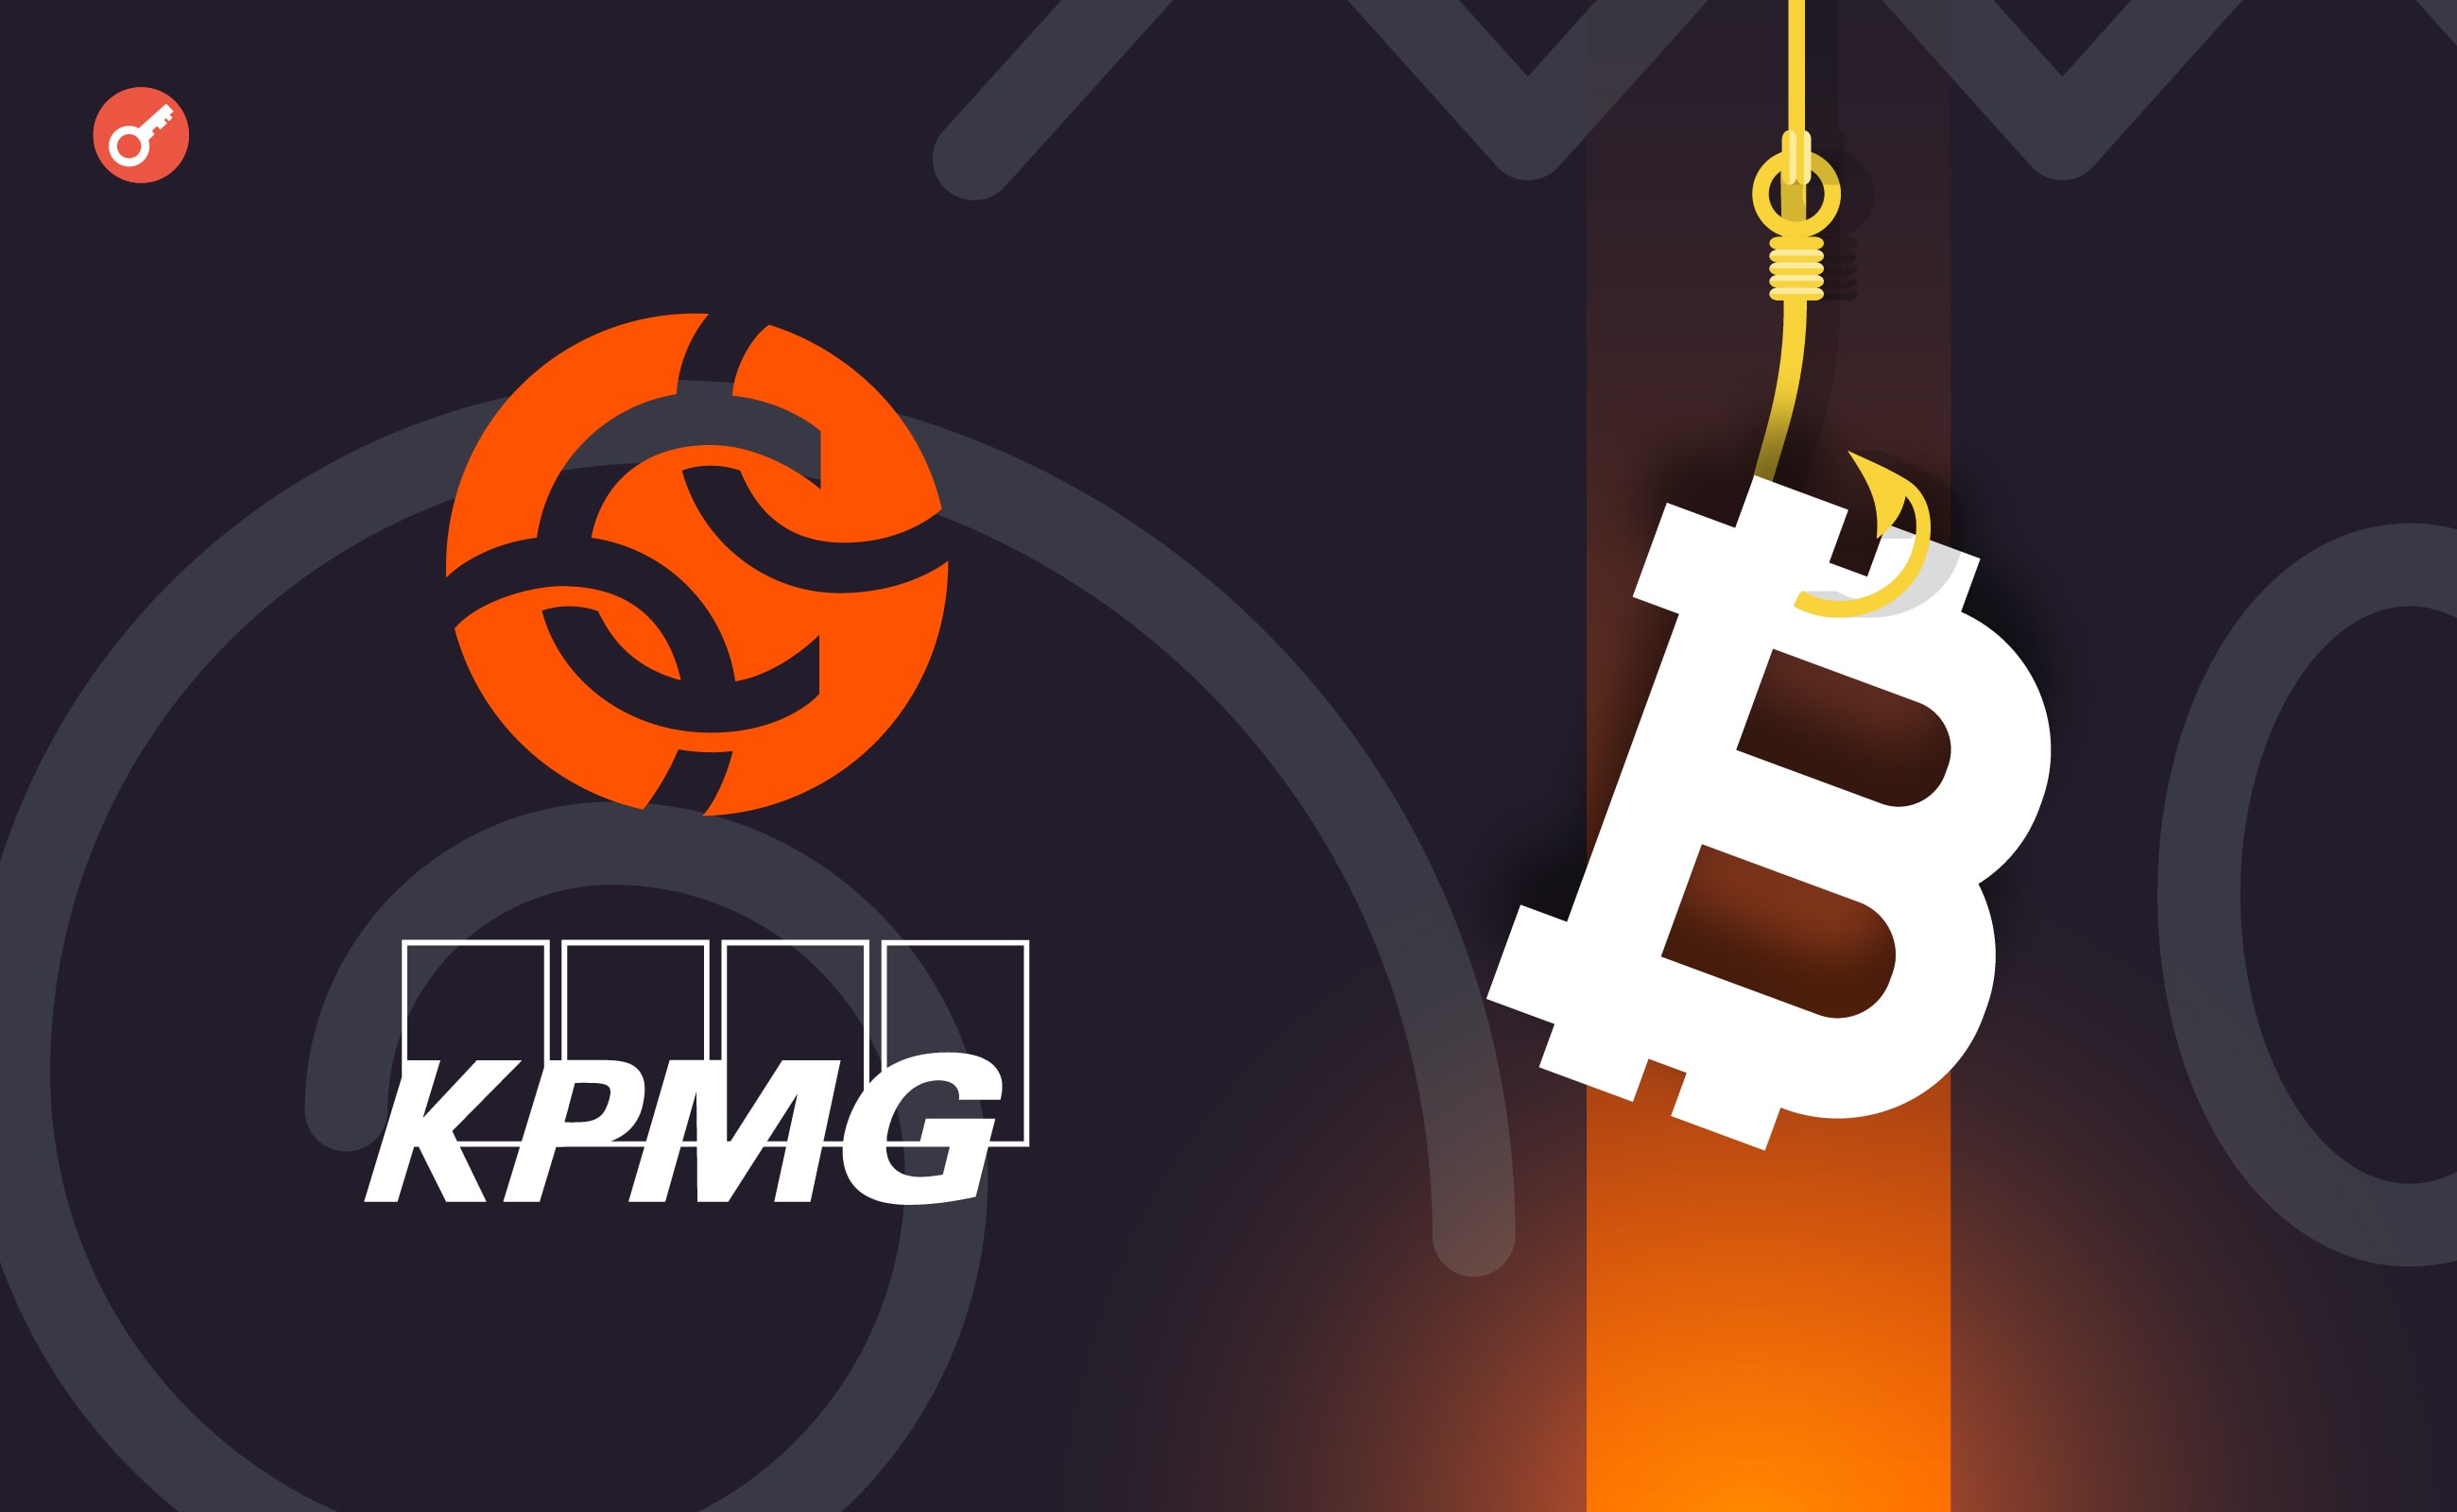 KPMG об’єдналася з Chainalysis для боротьби з шахрайством в криптовалютах. Головний колаж новини.